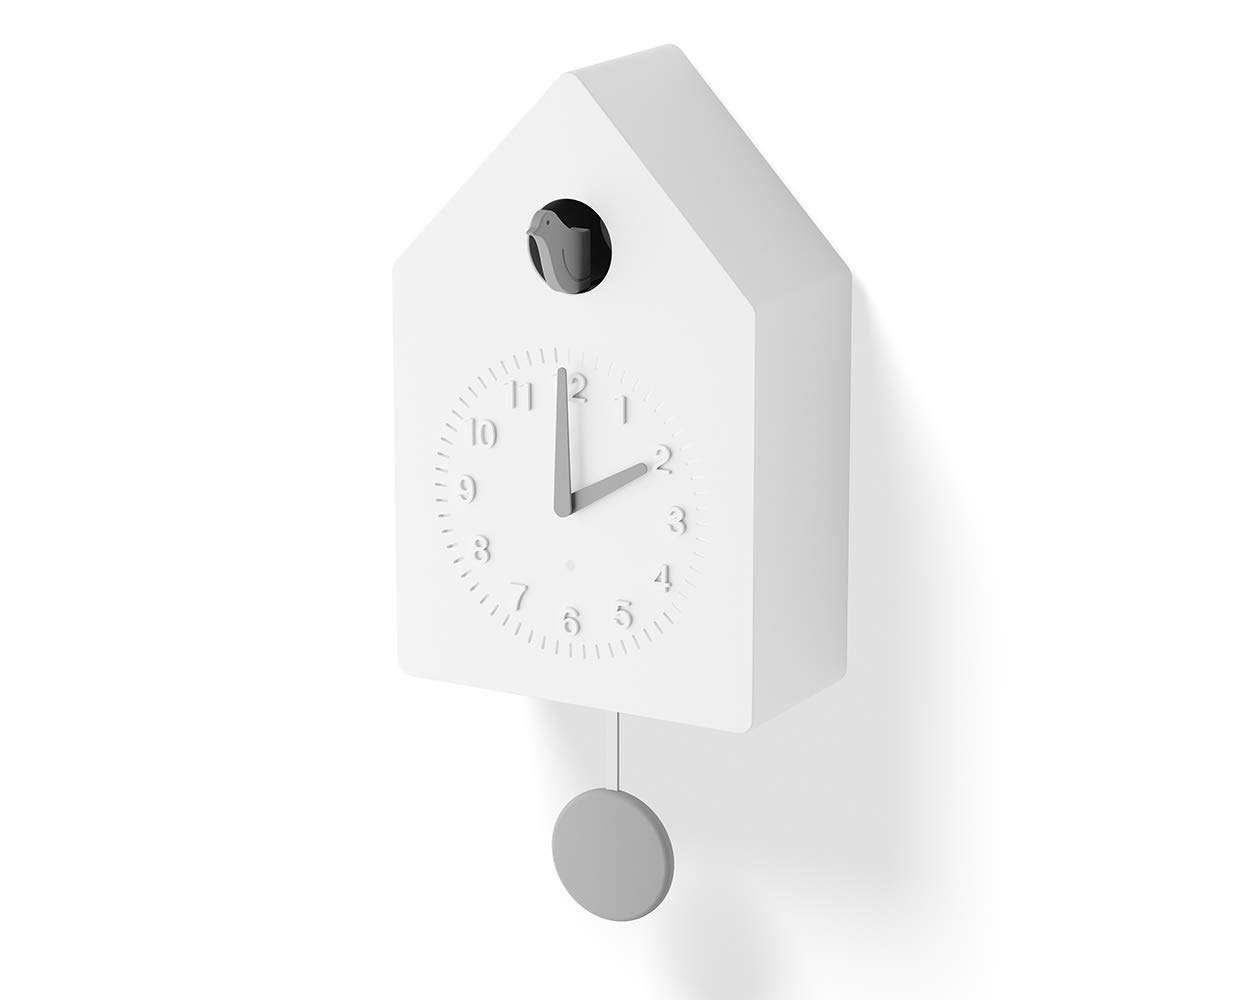 Amazon Smart Cuckoo Clock